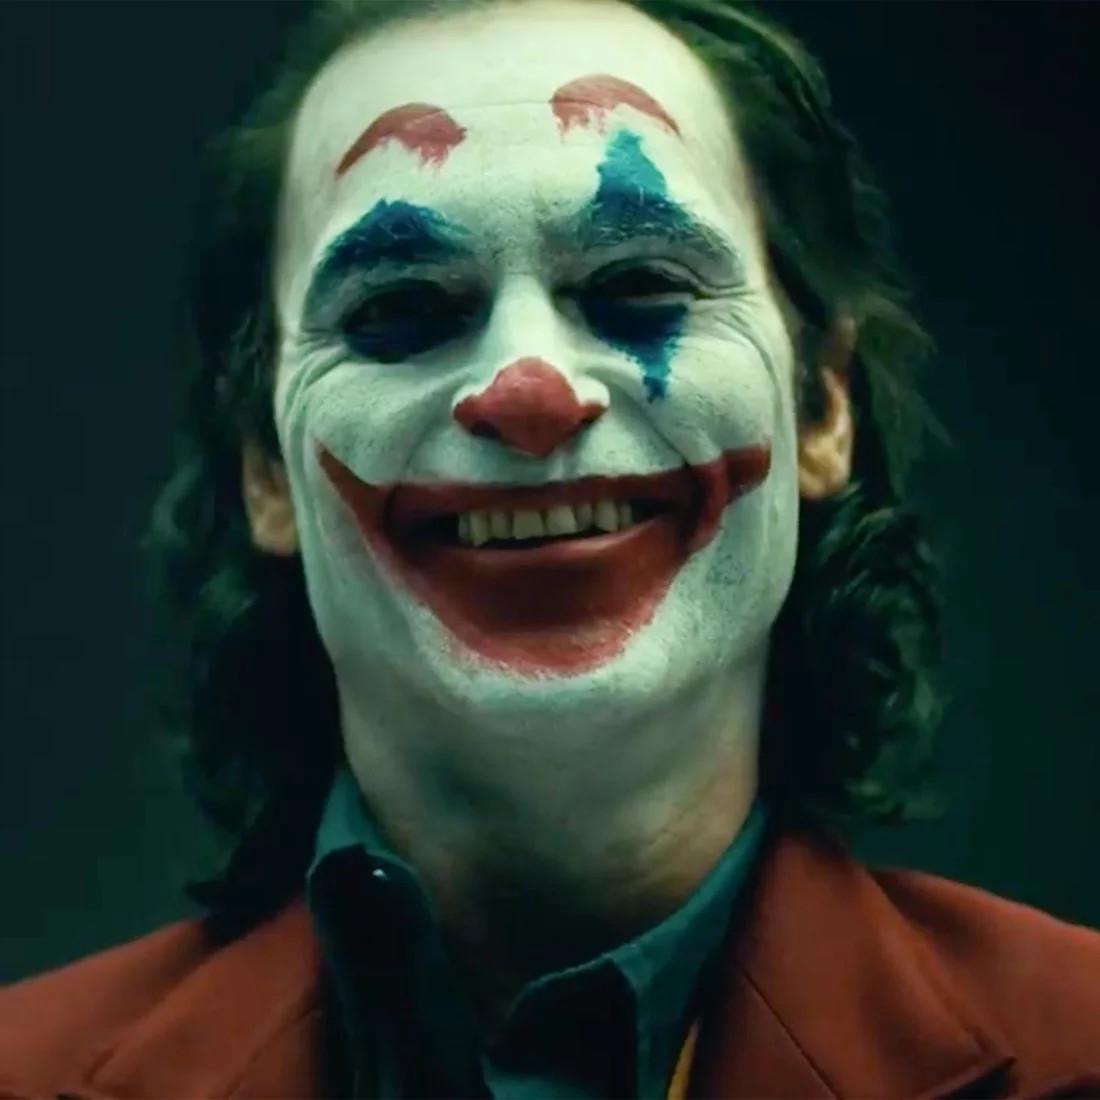 Joaquin Phoenix Joker Makeup On Set Image. Cosmic Book News